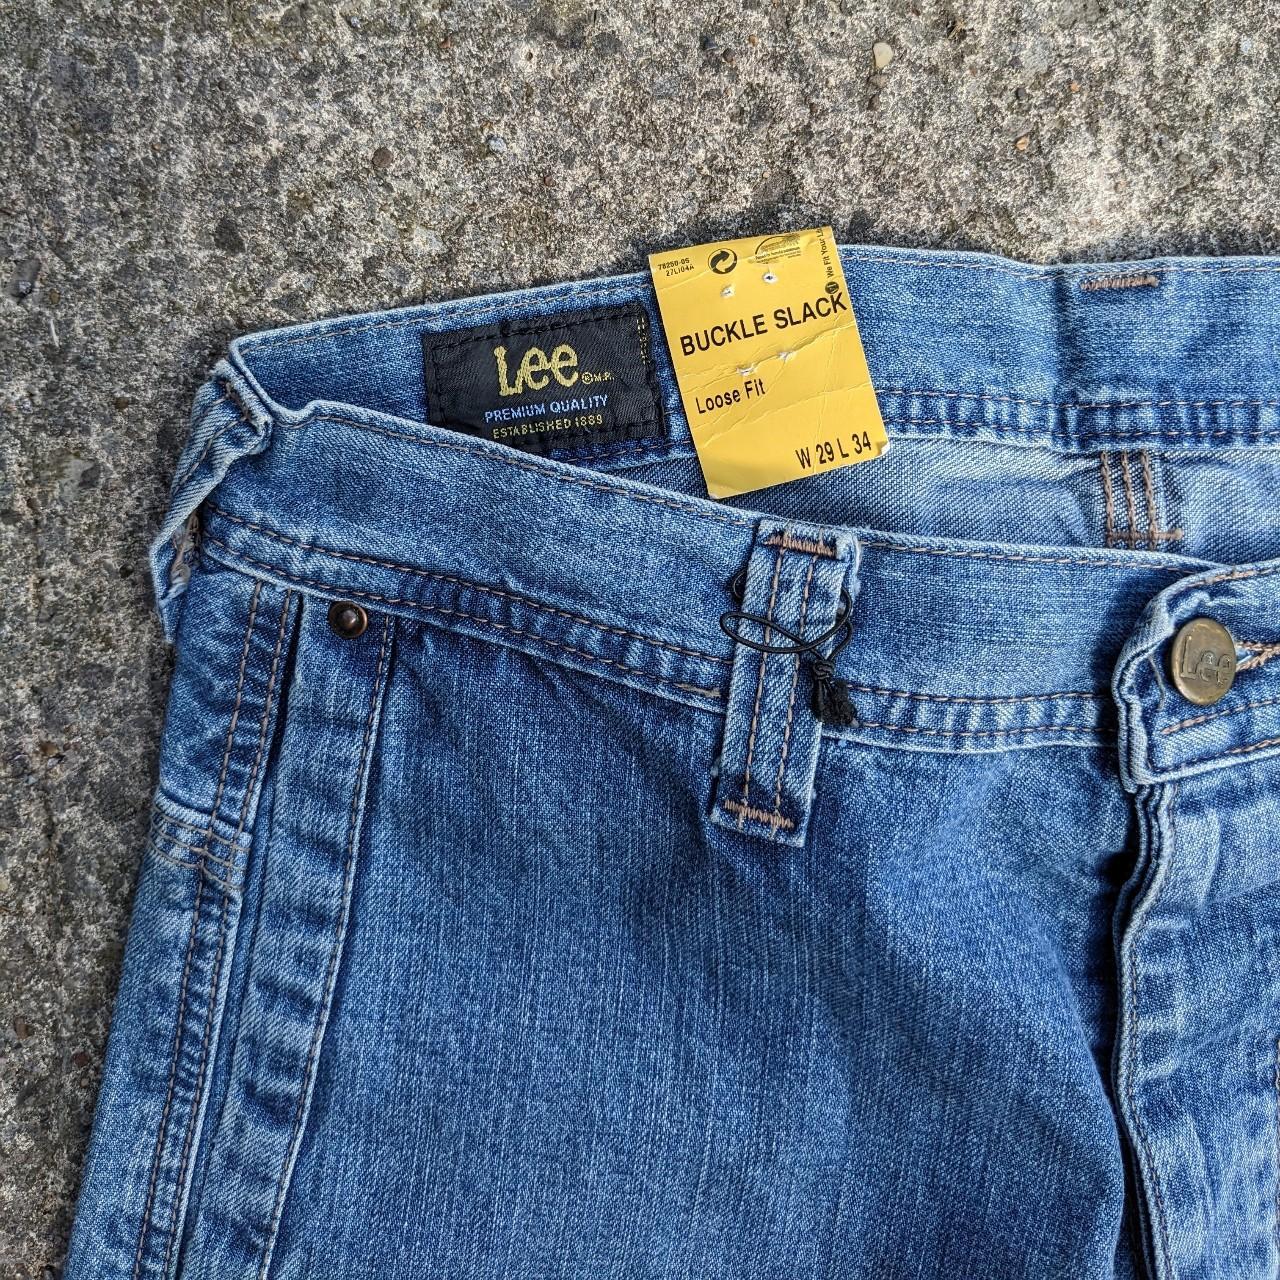 Rare Vintage 00s Lee Buckle Back Jeans Loose fit... - Depop